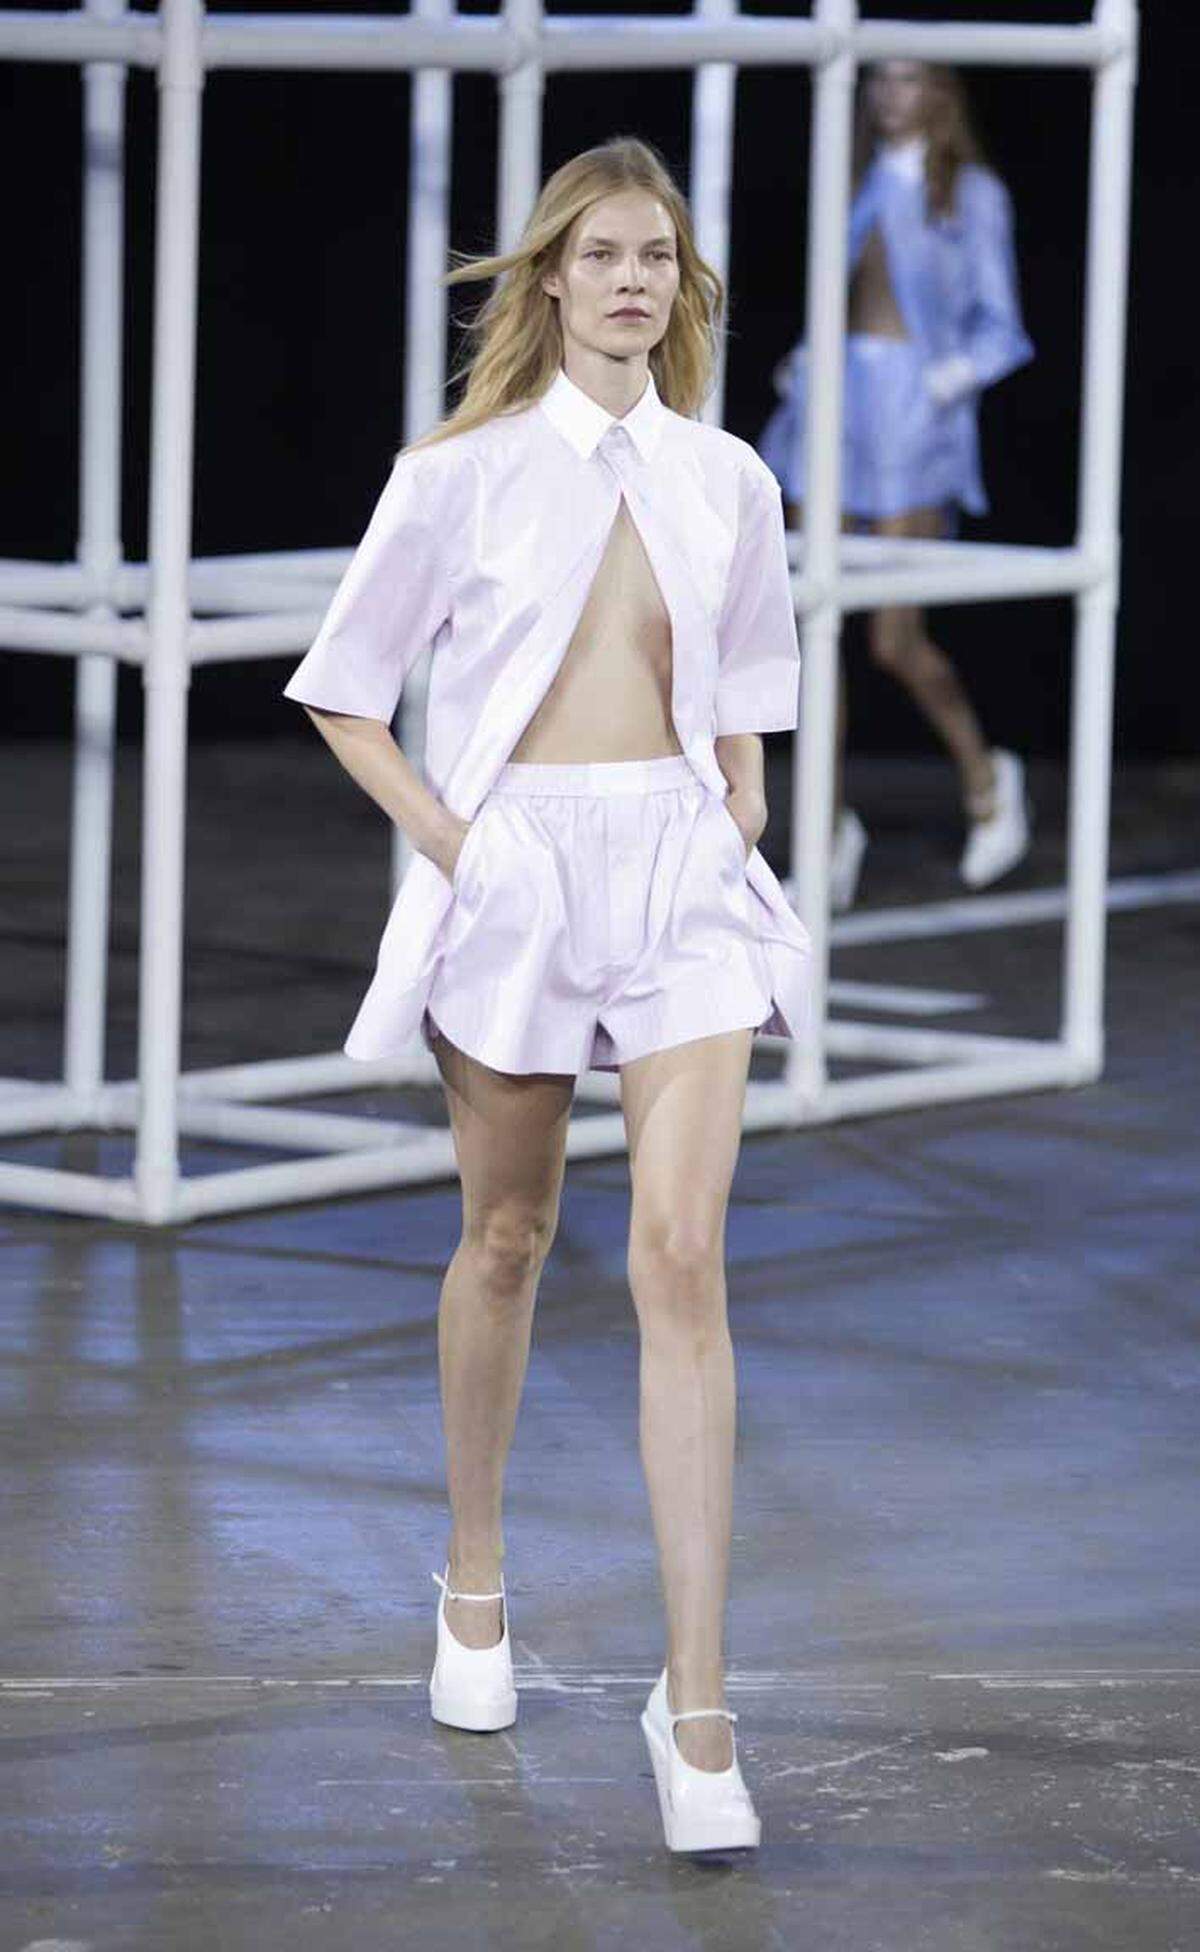 Das weiß auch US-Designer Alexander Wang der etwa eine sportliche Hose und eine klassische weiße Bluse kombiniert.